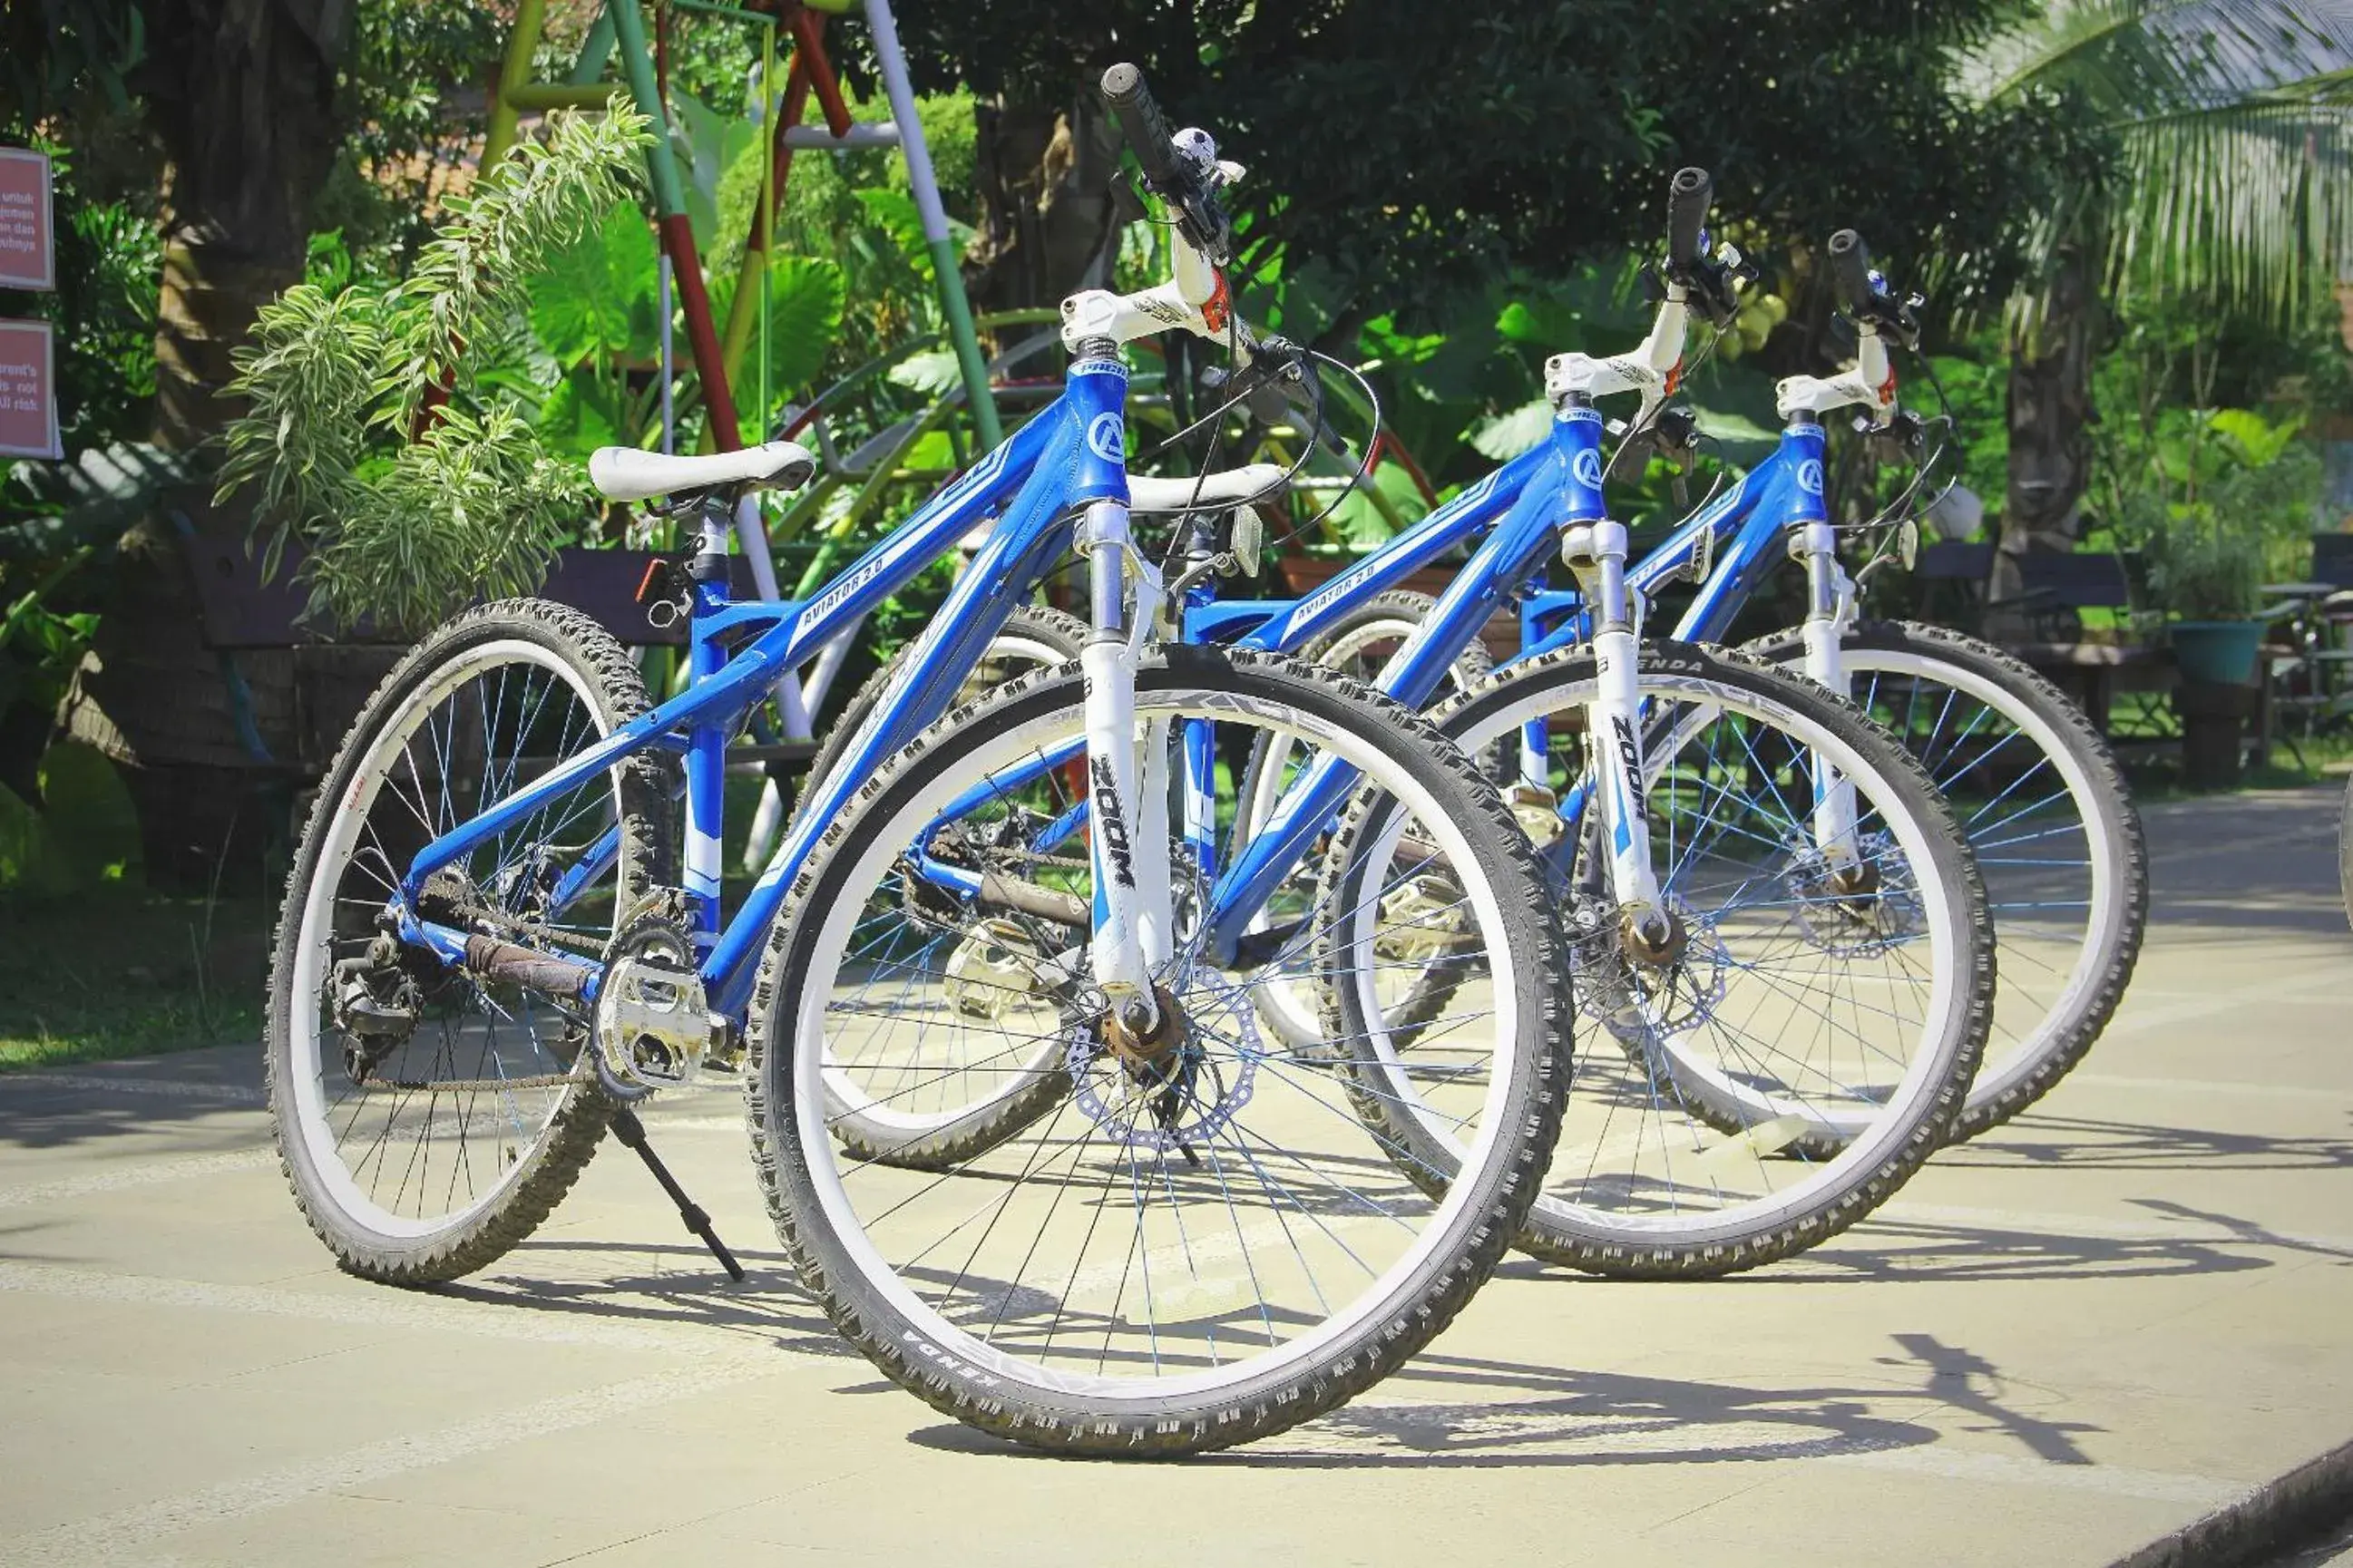 Cycling, Biking in Melva Balemong Resort